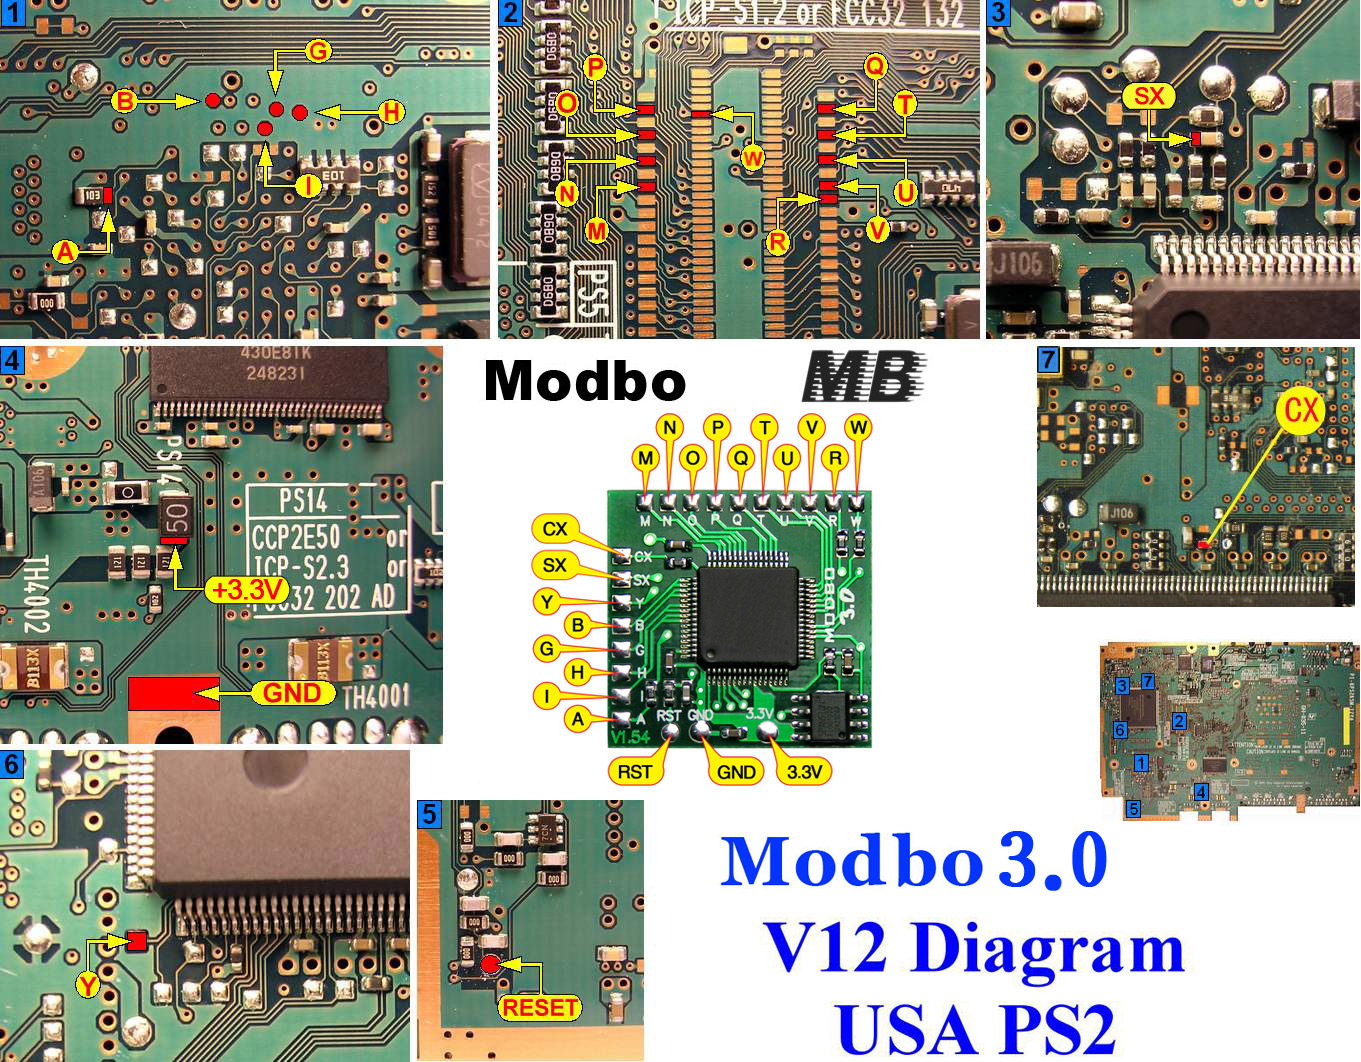 Modbo 4.0 V12 PS2 diagram